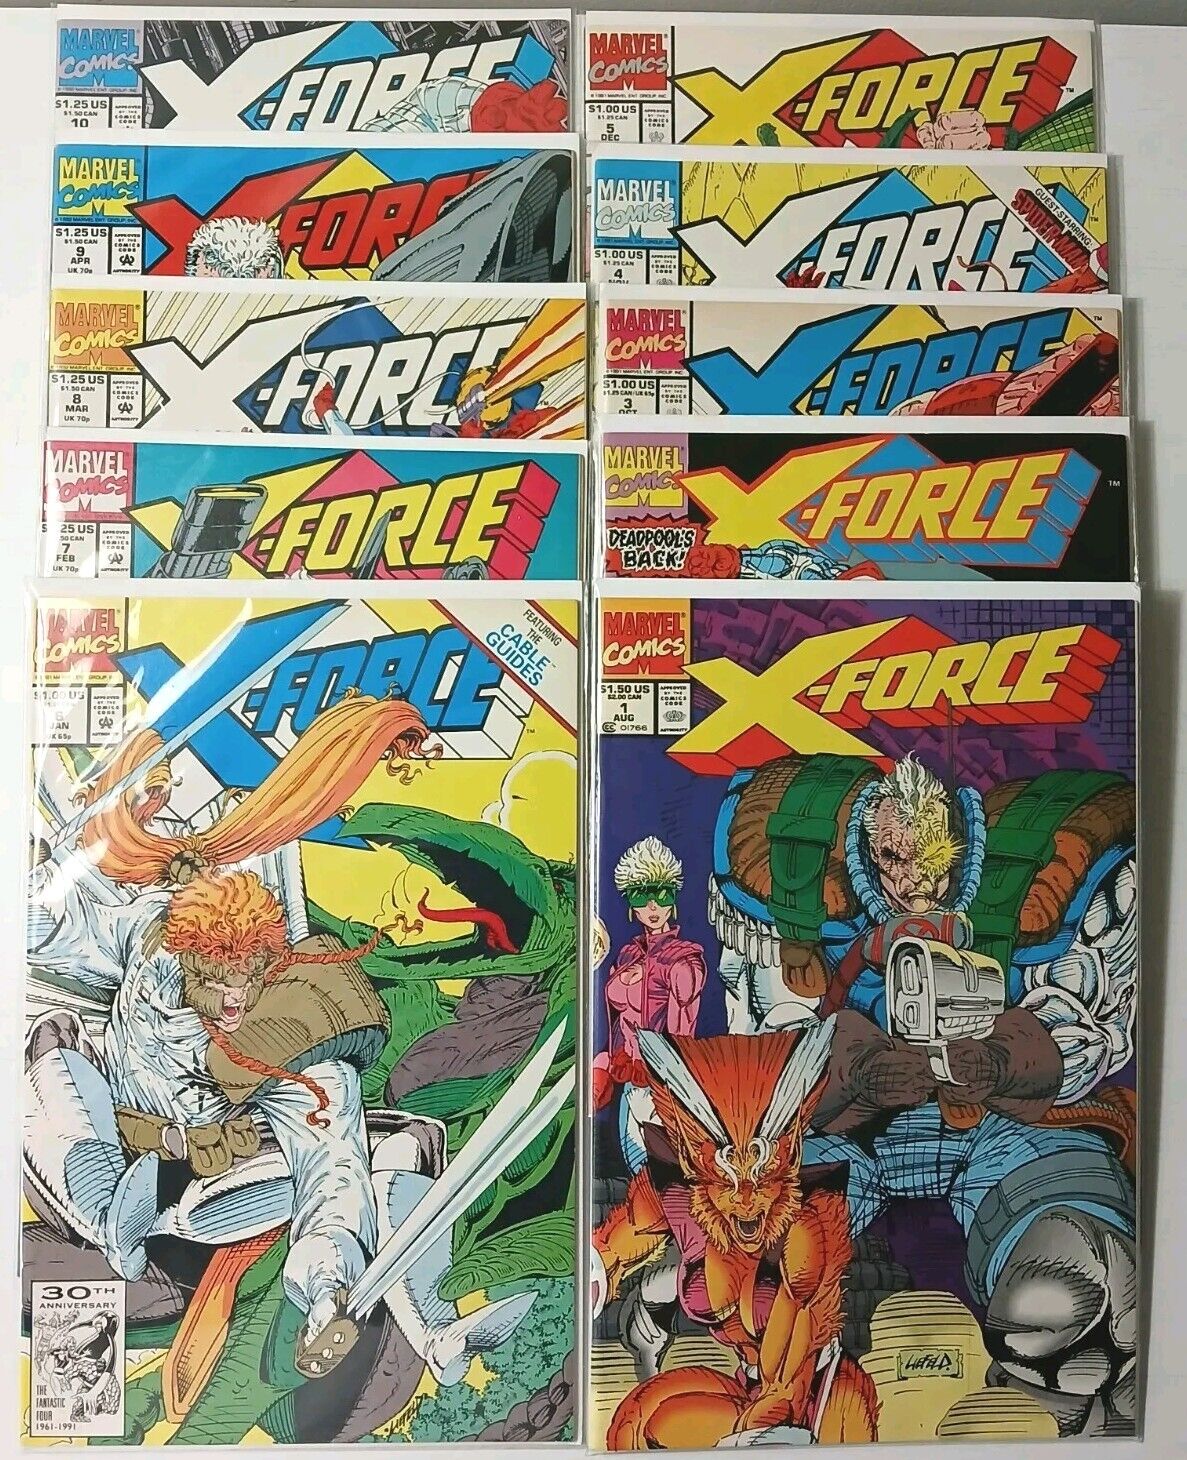 Marvel X-Force Vol. 1 #1-10 w/ KEYS Rob Liefeld 1991 VF-NM+